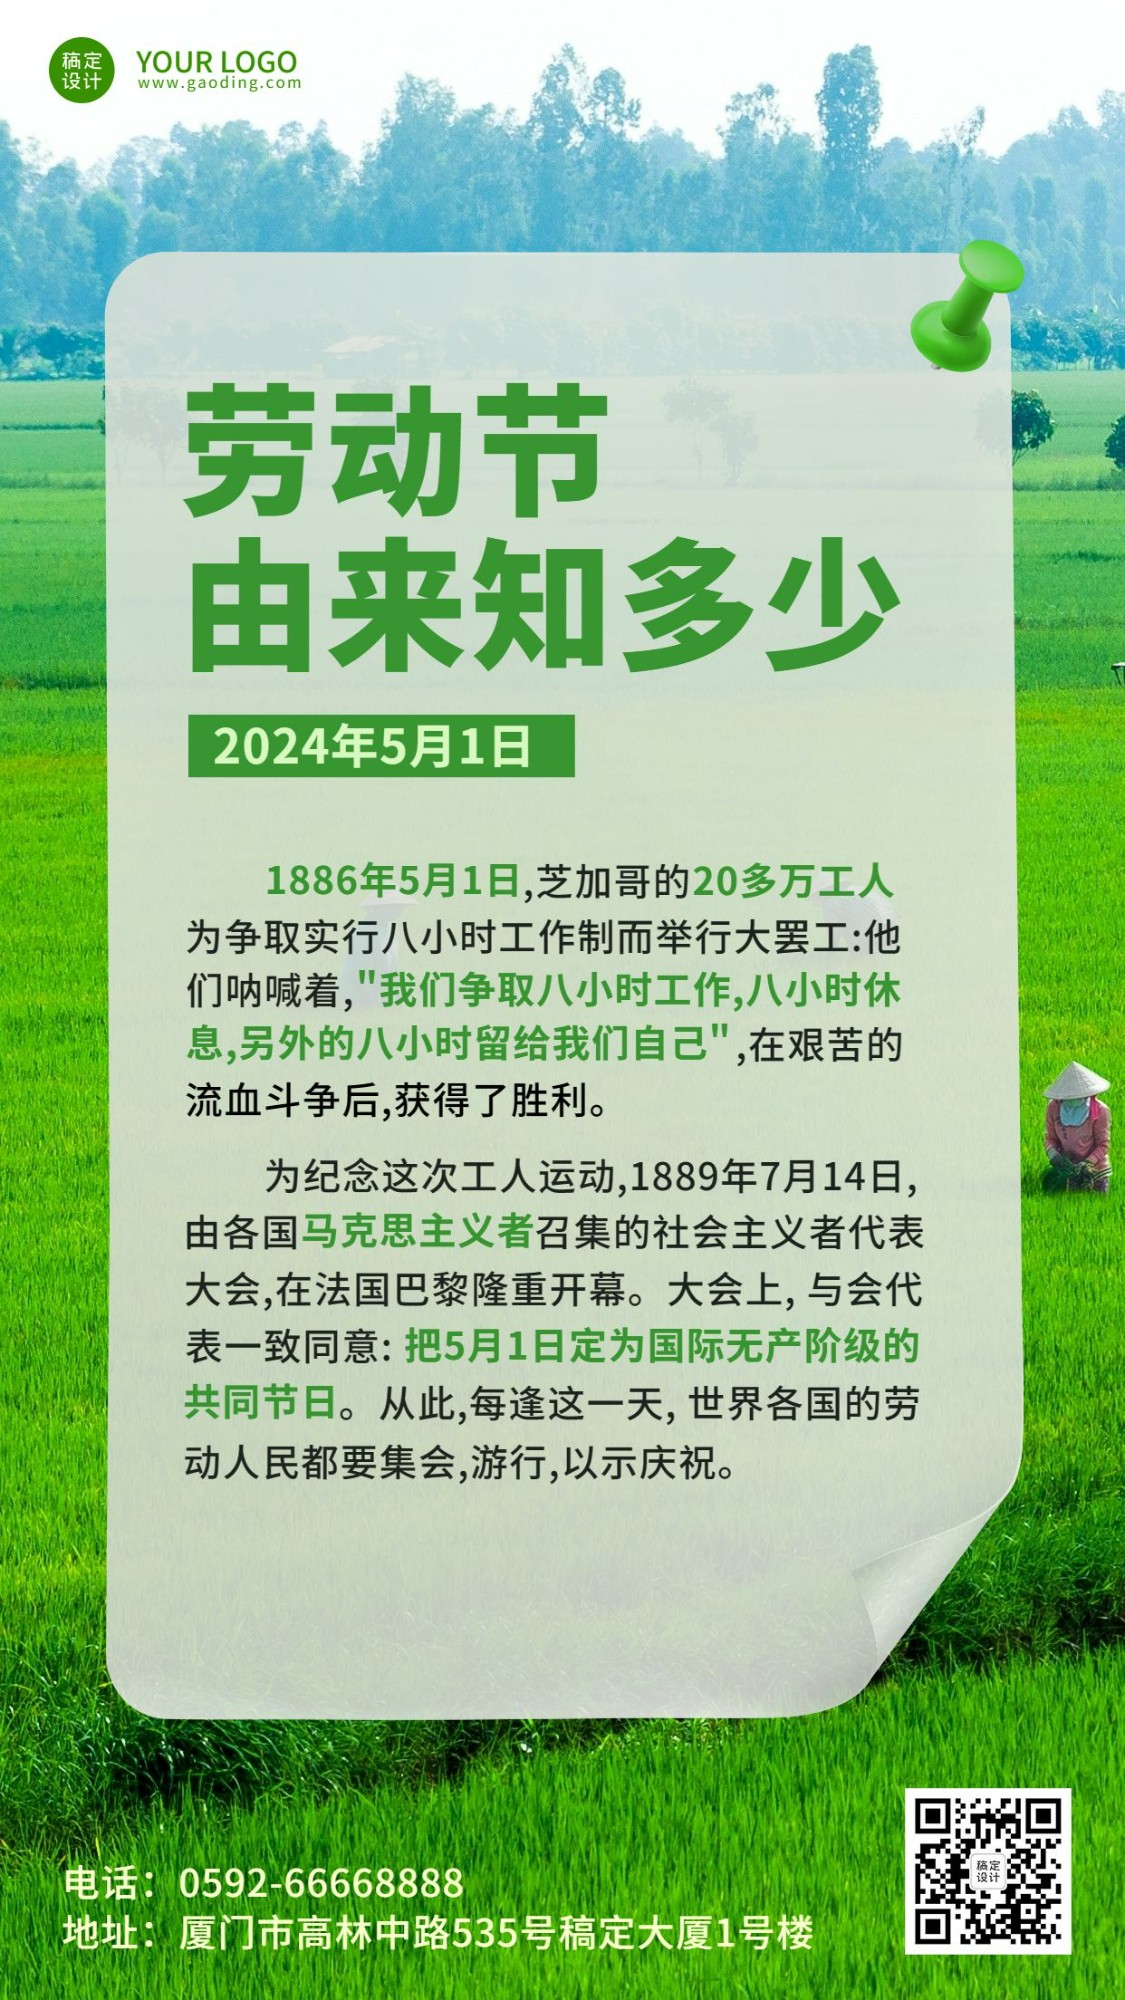 劳动节节日由来排版手机海报预览效果